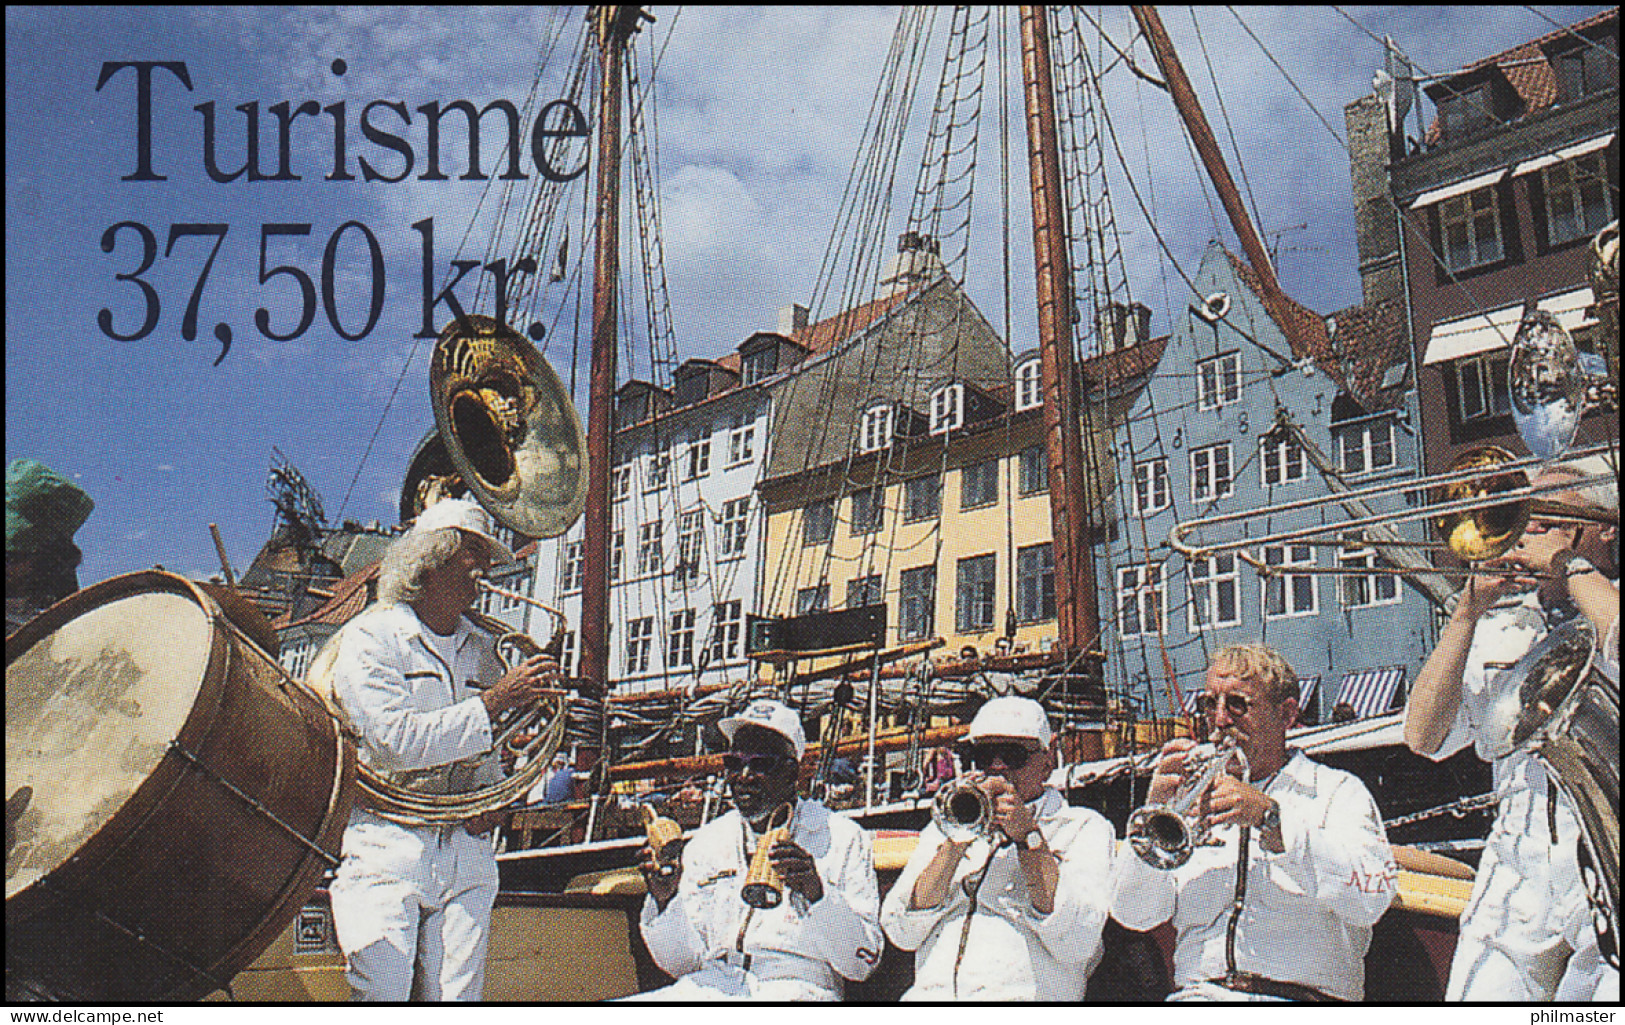 Dänemark Markenheftchen 1105 NORDEN - Tourismus / Turisme, ** Postfrisch - Booklets